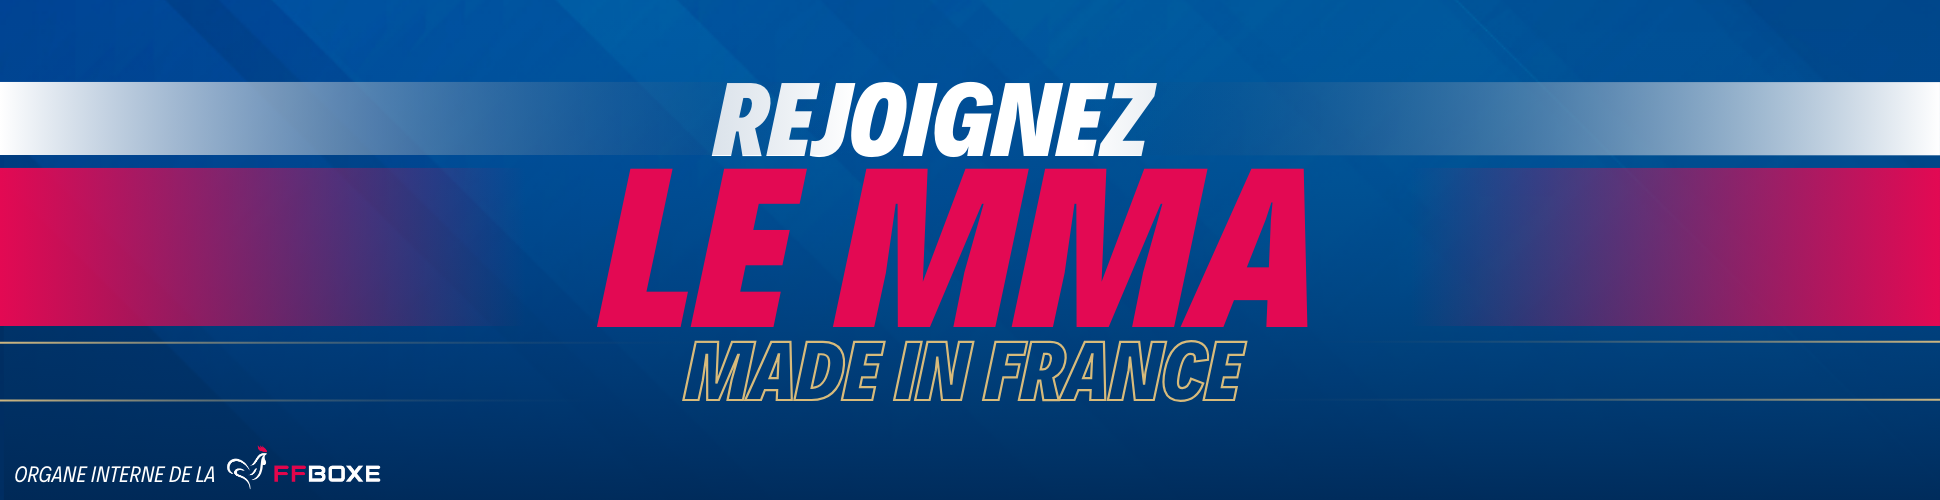 Bannière Rejoignez le MMA made in France. FMMAF le MMA en France, UFC France Paris